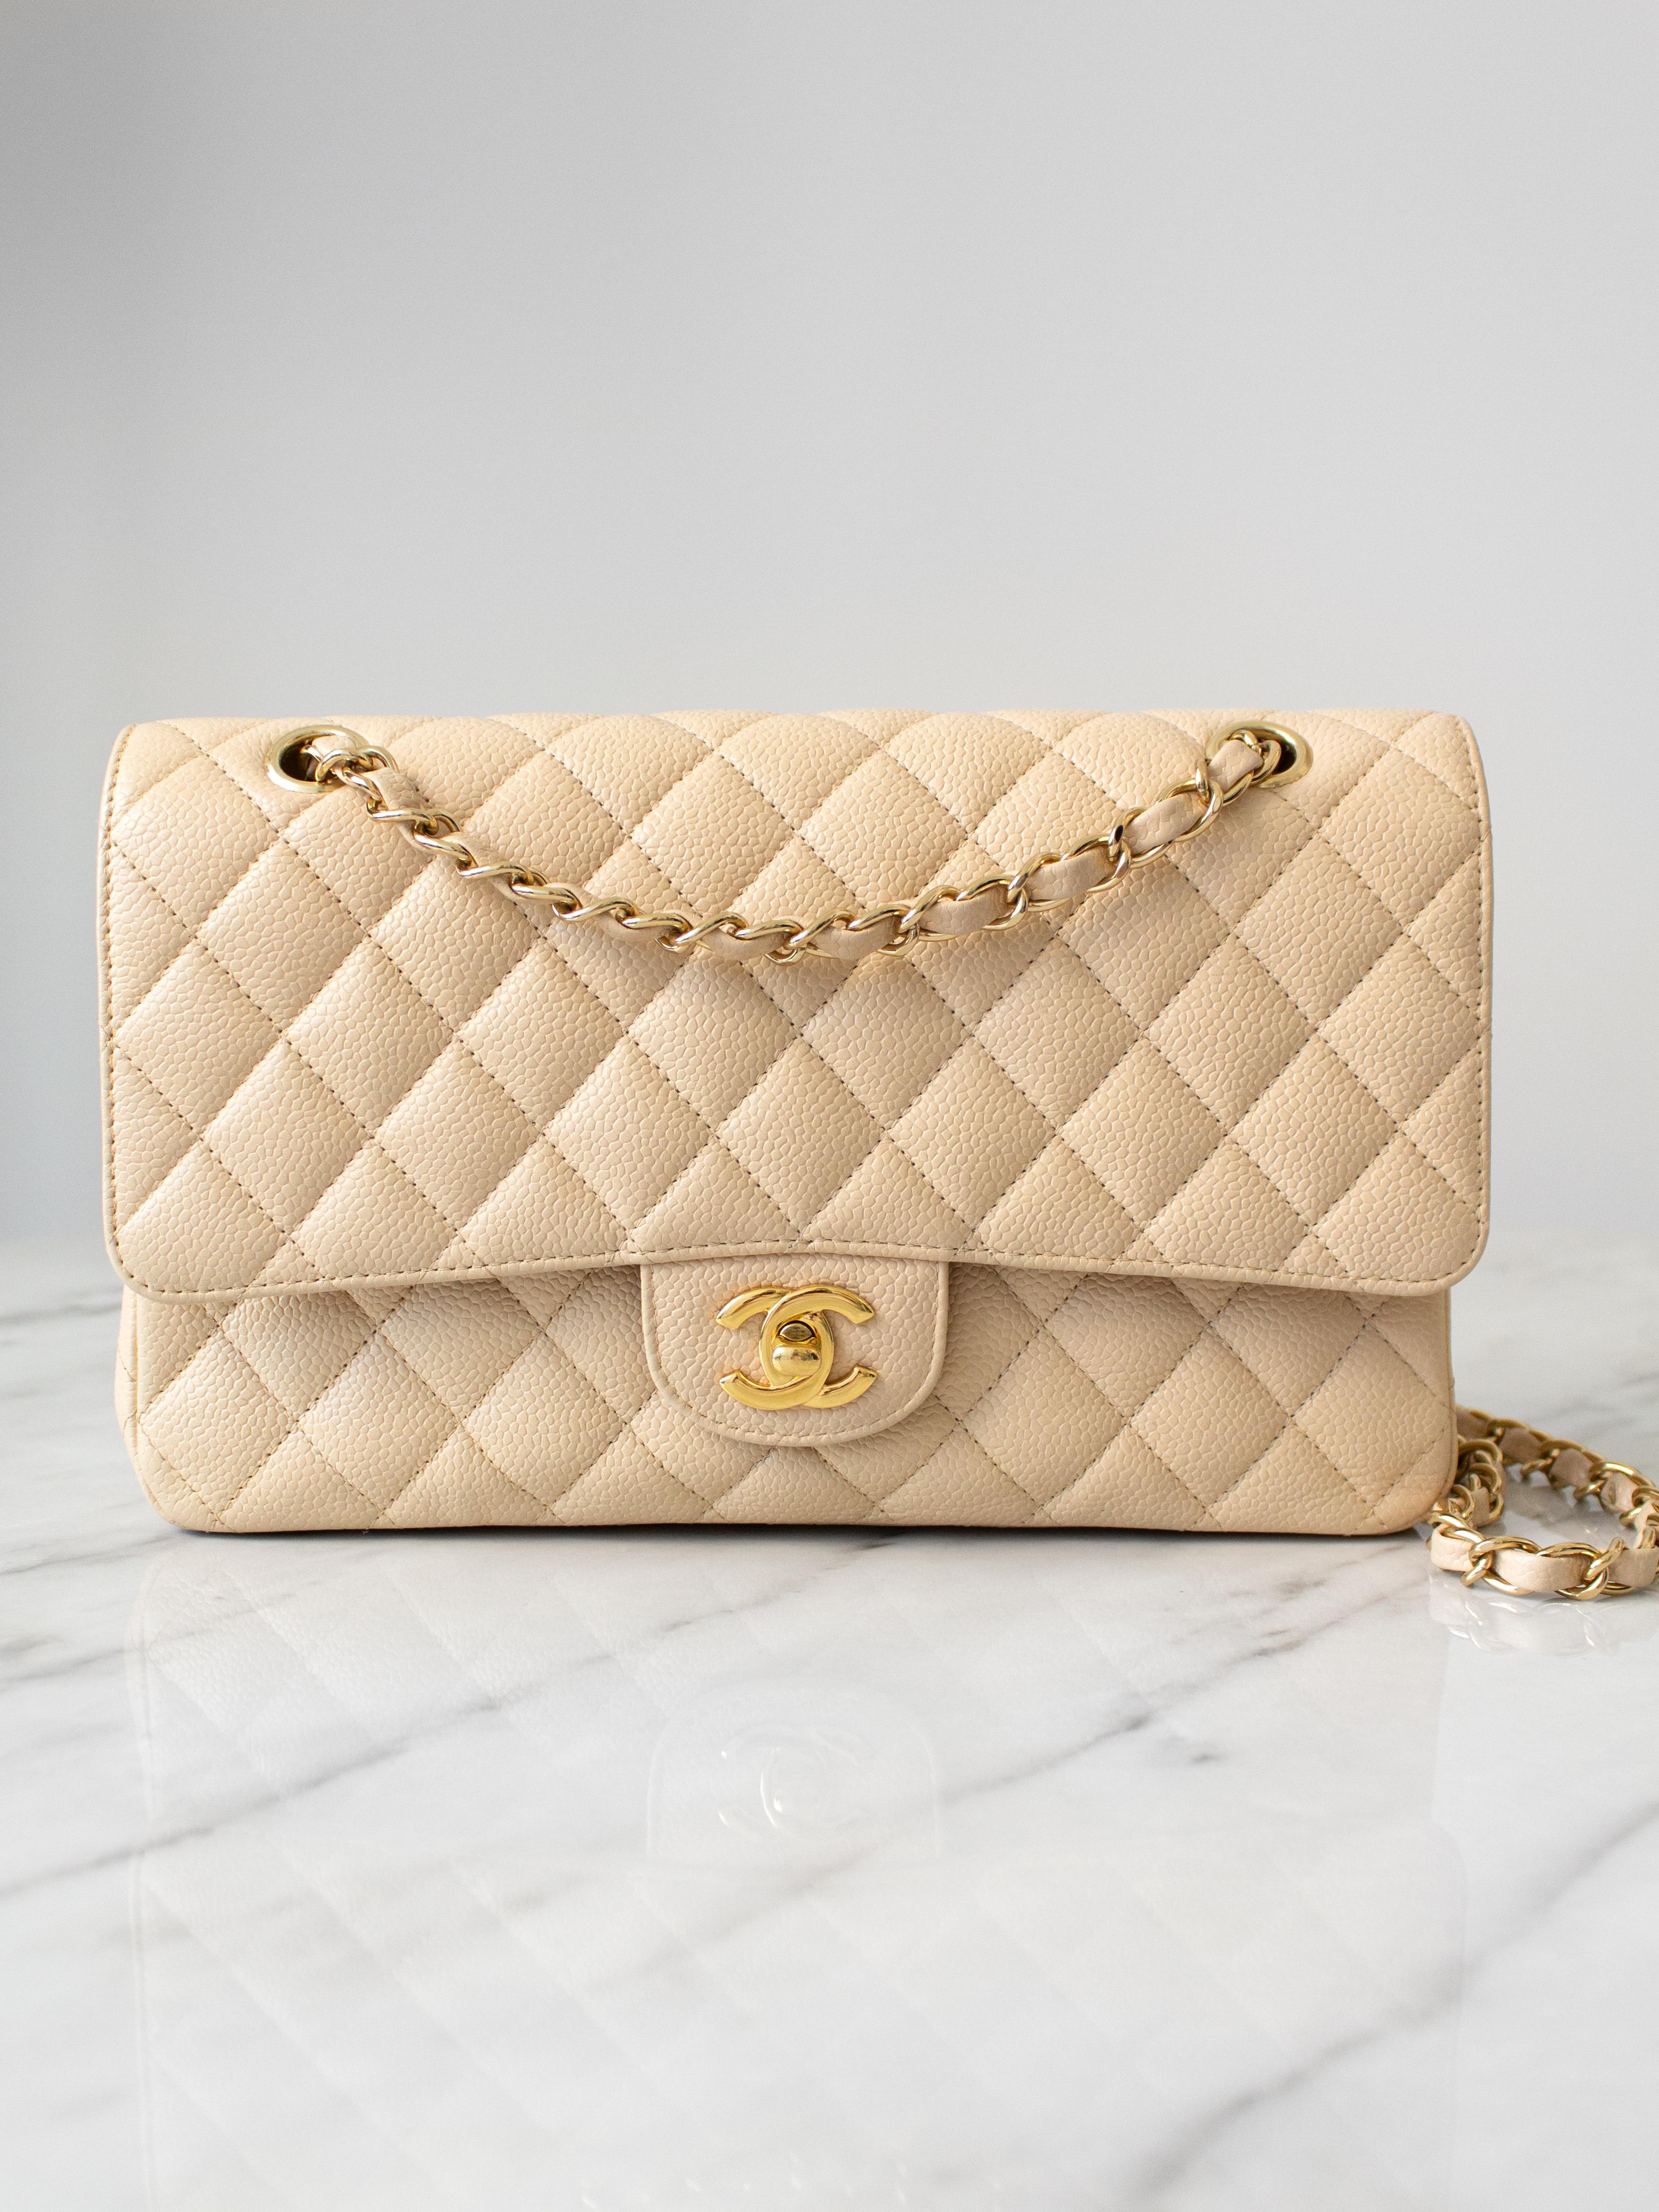 Wir präsentieren eine sehr begehrte Tasche: Chanel Double Flap in Beige Clair - ein neutraler Beigeton mit einem Hauch von Elfenbein, der bei Chanel-Fans sehr beliebt ist. Sie debütierte 2009 und wurde schnell zu einem Klassiker, den Chanel das